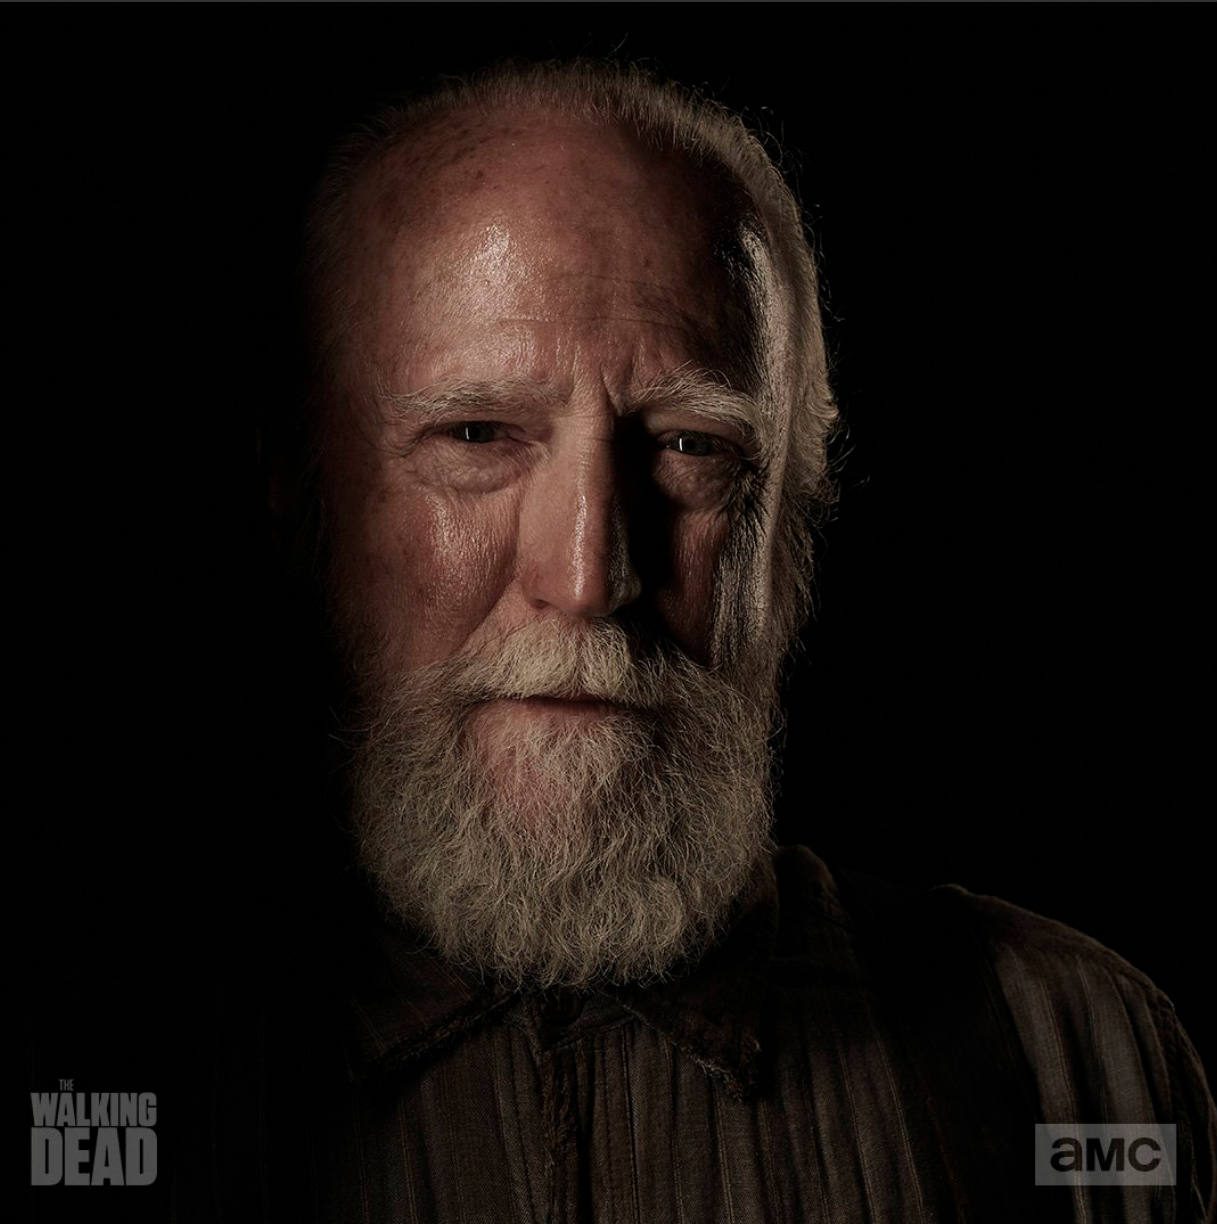 ‘Walking Dead’ actor Scott Wilson dies